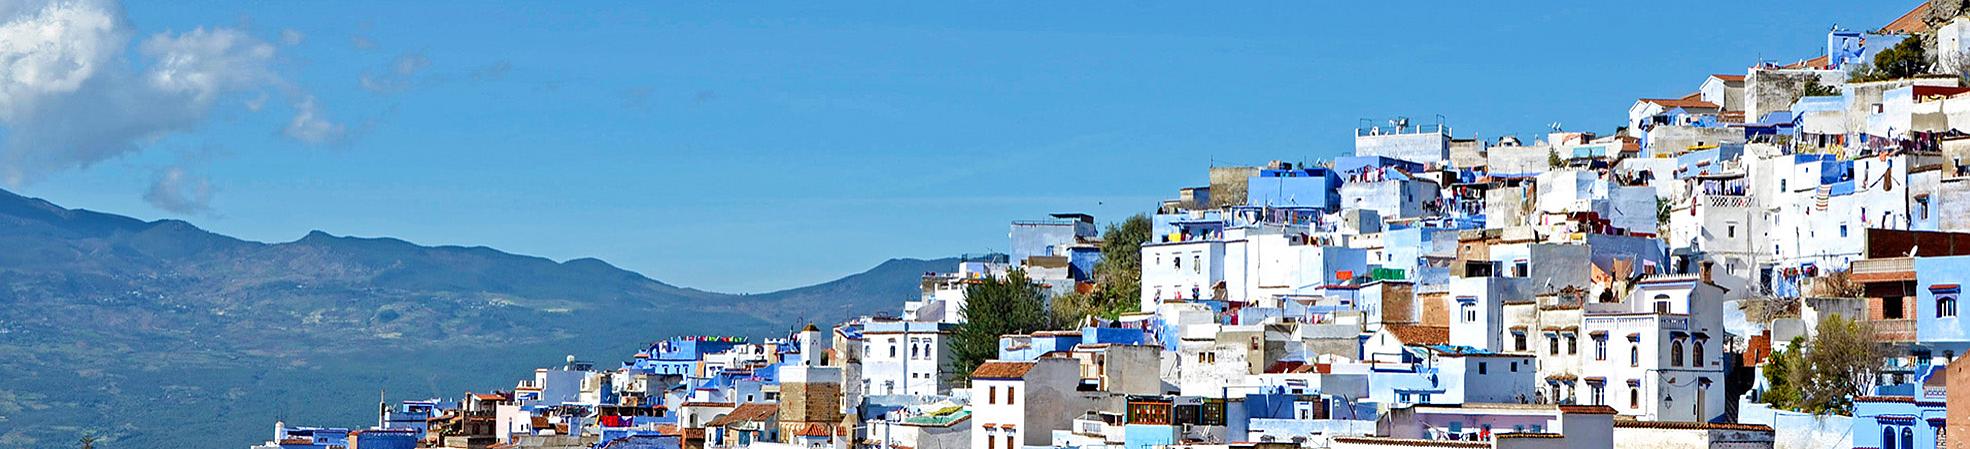 Morocco's Colors: Chefchaouen, Marrakech, Sahara, Casablanca